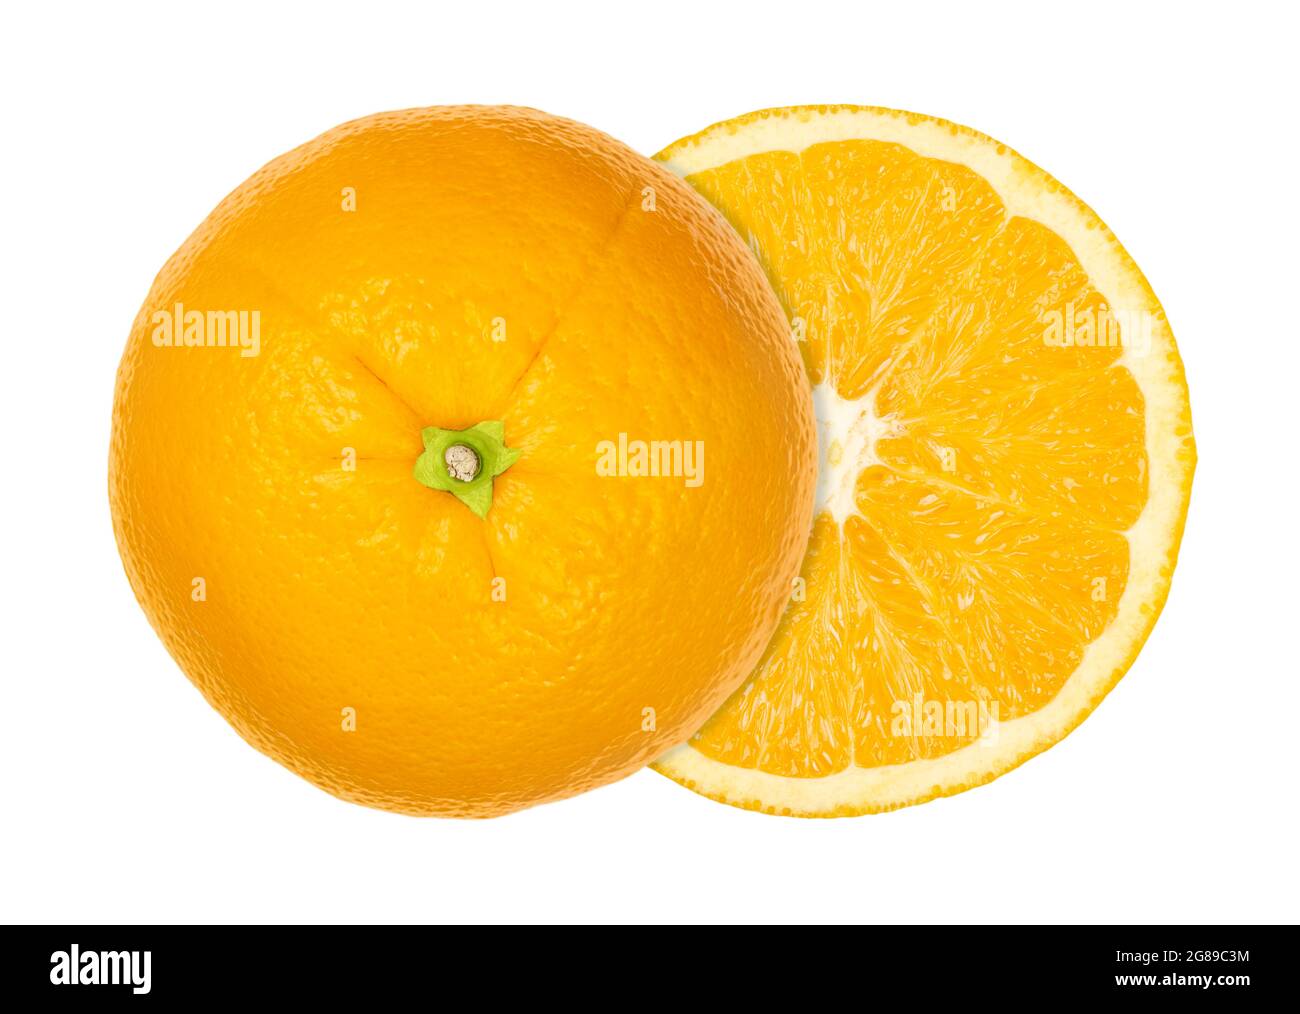 Arancione tagliato a metà, entrambe le metà sfalsate lateralmente, dall'alto, isolato su bianco. Arancio di Valencia maturo con sezione trasversale. Citrus sinensis. Foto Stock